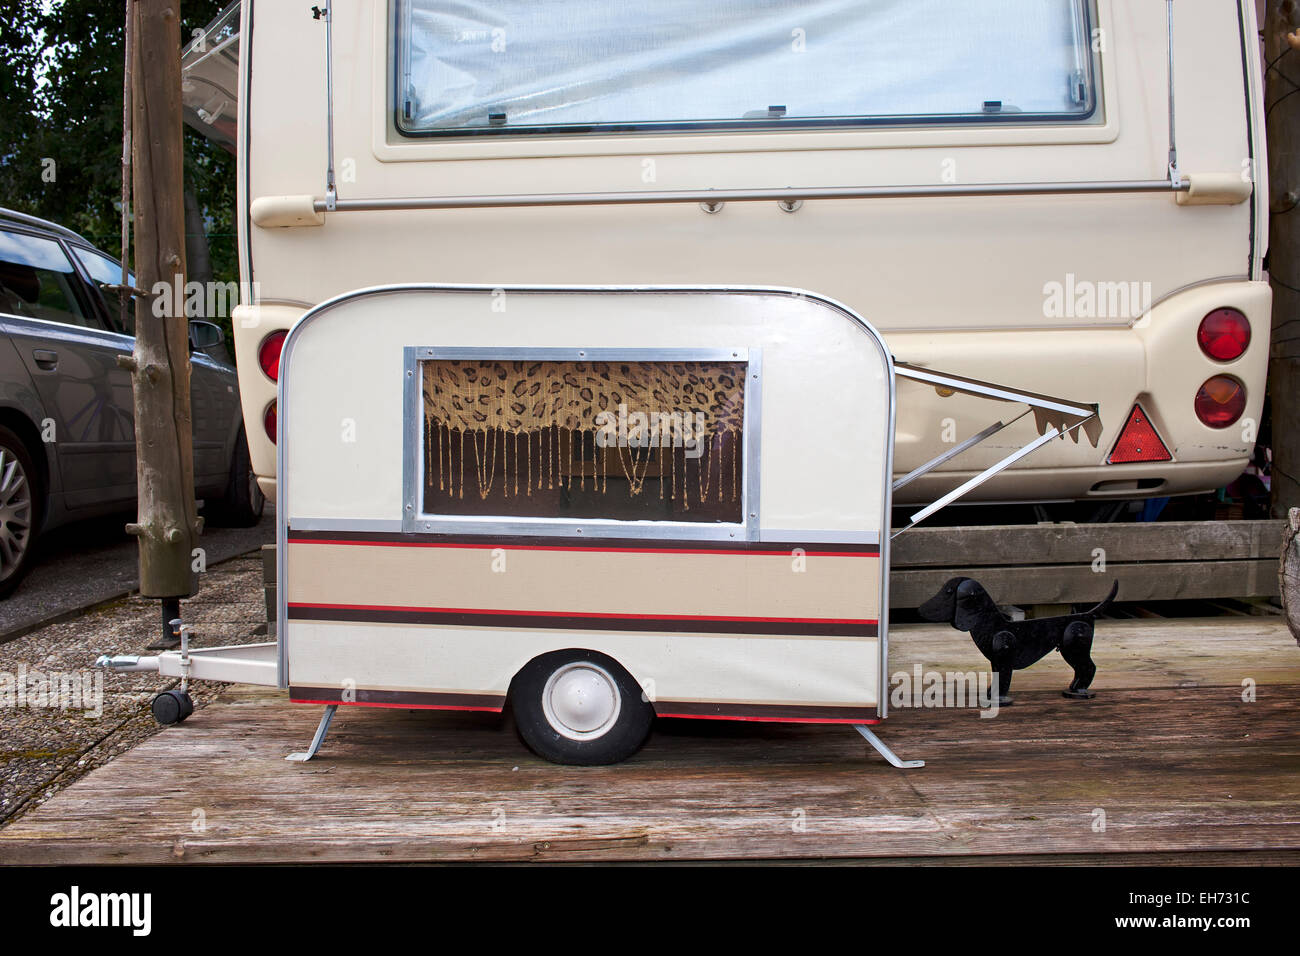 Kleines Modell Wohnwagen für einen kleinen Hund geparkt auf der Rückseite  der Eigentümer in voller Größe Wohnwagen auf einem Campingplatz  Stockfotografie - Alamy